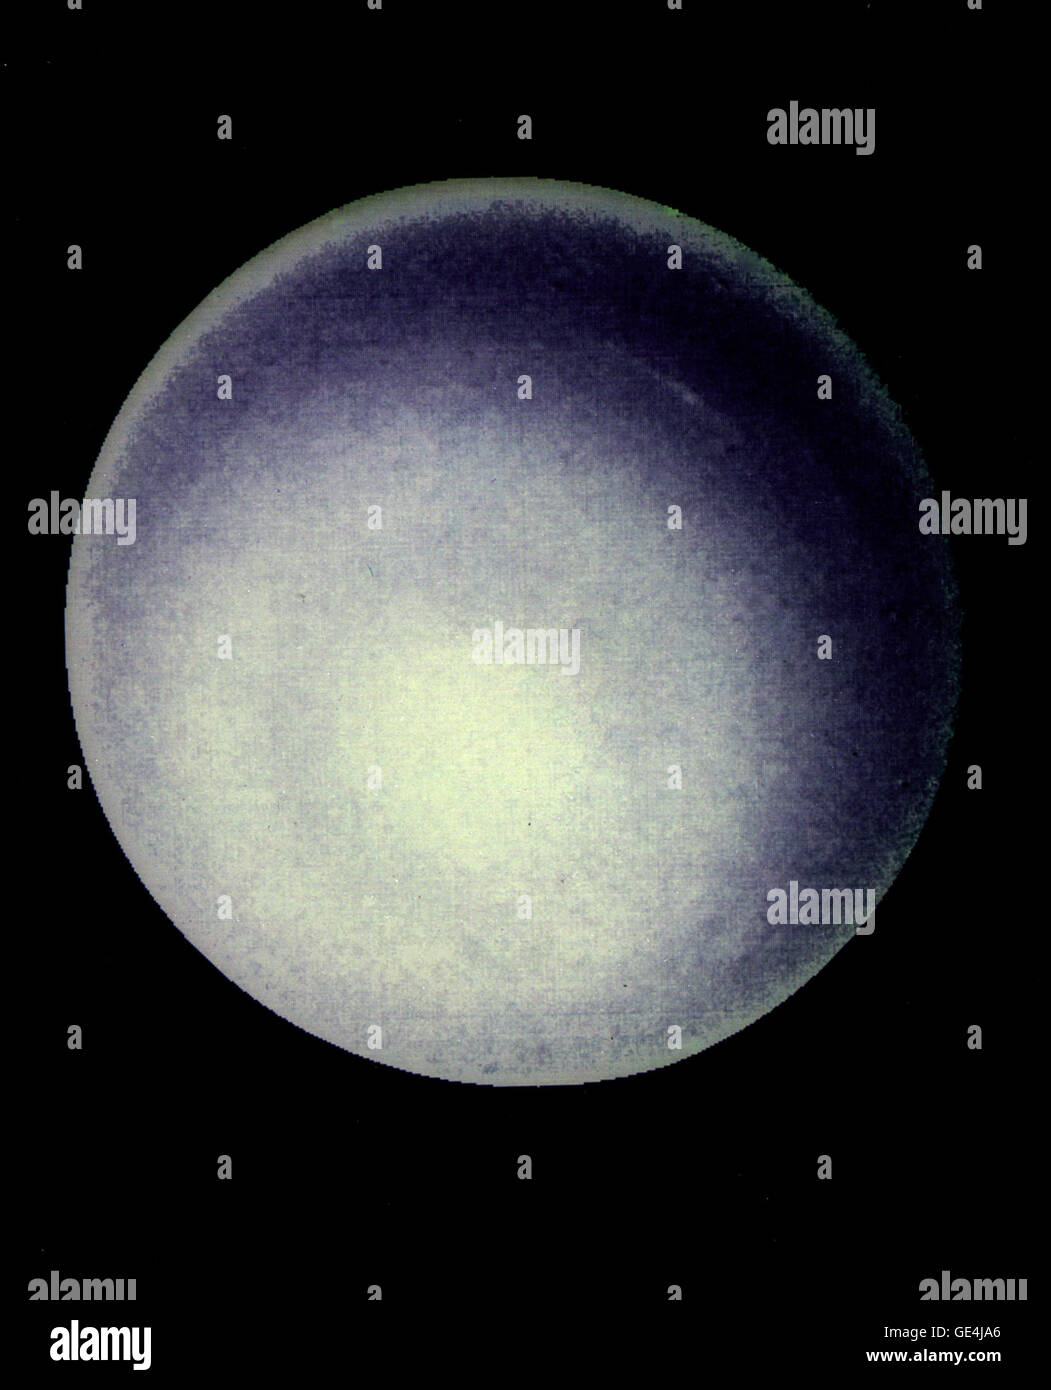 Questo computer il potenziamento di una Voyager 2 immagine, sottolinea l elevato livello di opacità nella Urano' atmosfera superiore. Le nubi sono oscurati dal sovrastante atmosfera. Il Jet Propulsion Laboratory (JPL) gestisce e controlla il progetto Voyager per la NASA dell'Ufficio della scienza spaziale, Washington DC. Immagine # : PIA01488 Data: 24 gennaio 1986 Foto Stock